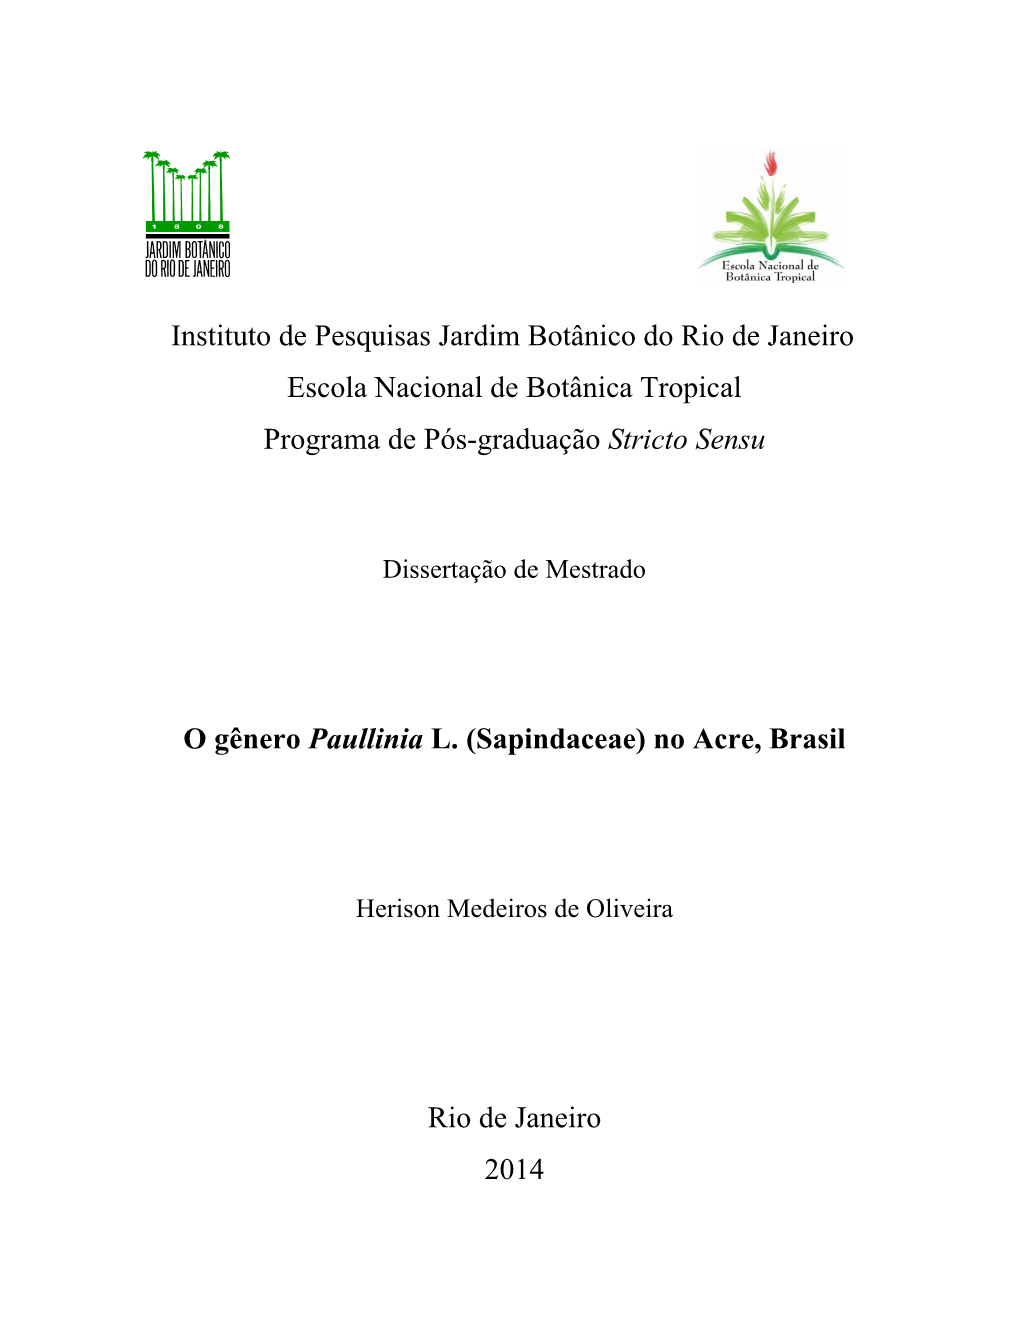 Instituto De Pesquisas Jardim Botânico Do Rio De Janeiro Escola Nacional De Botânica Tropical Programa De Pós-Graduação Stricto Sensu